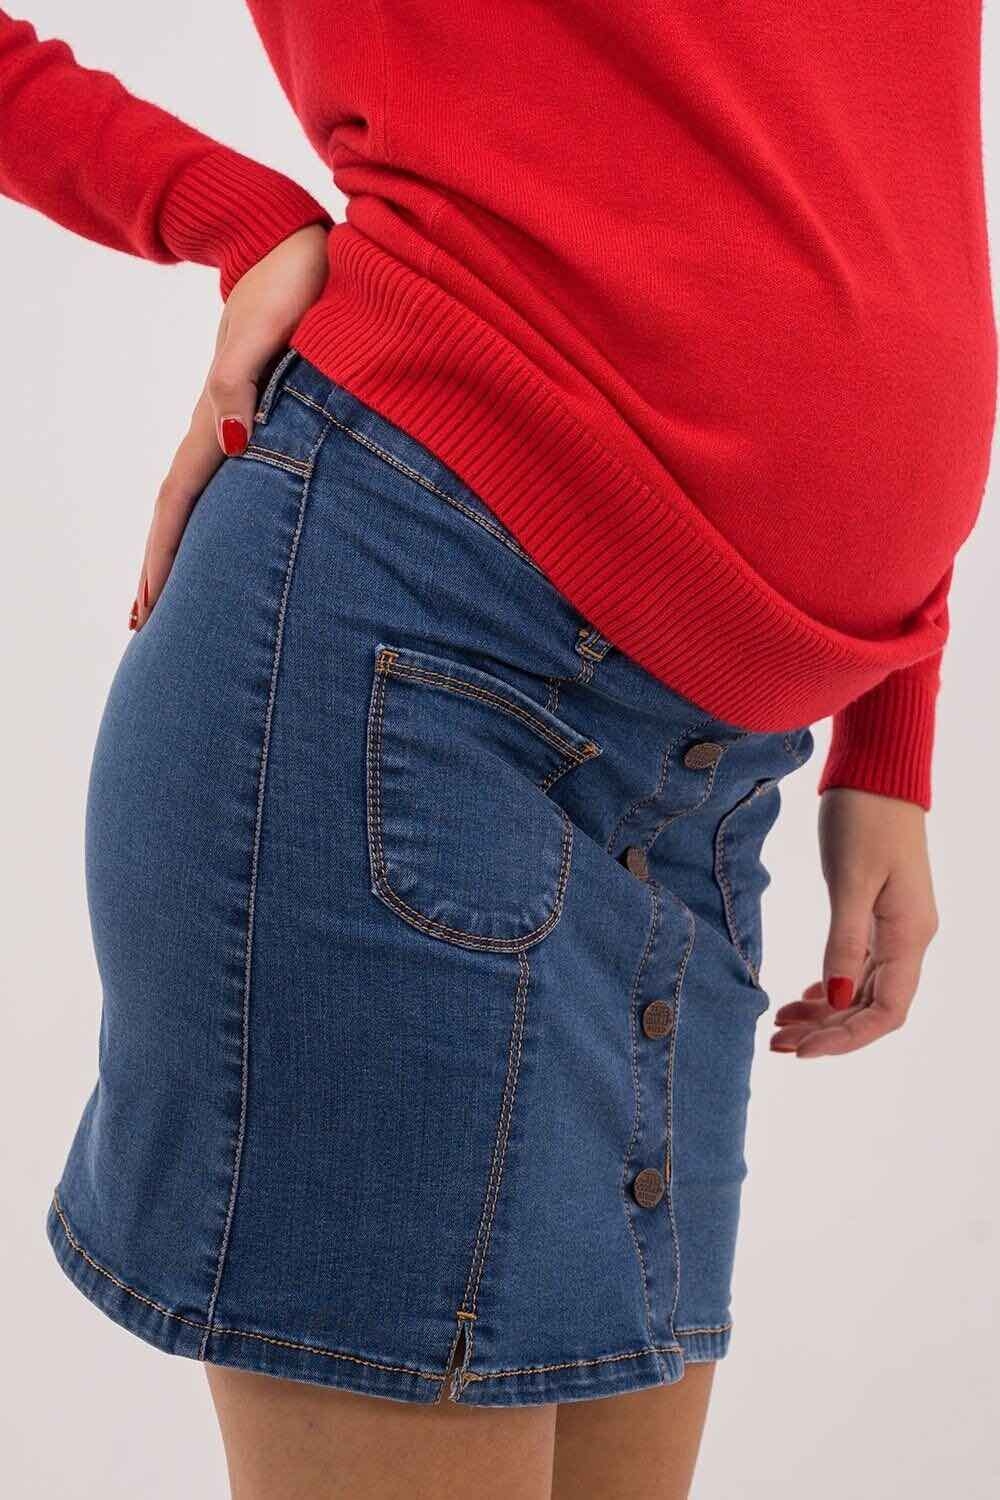 Юбка джинсовая для беременных, будущих мам Синяя варка 0